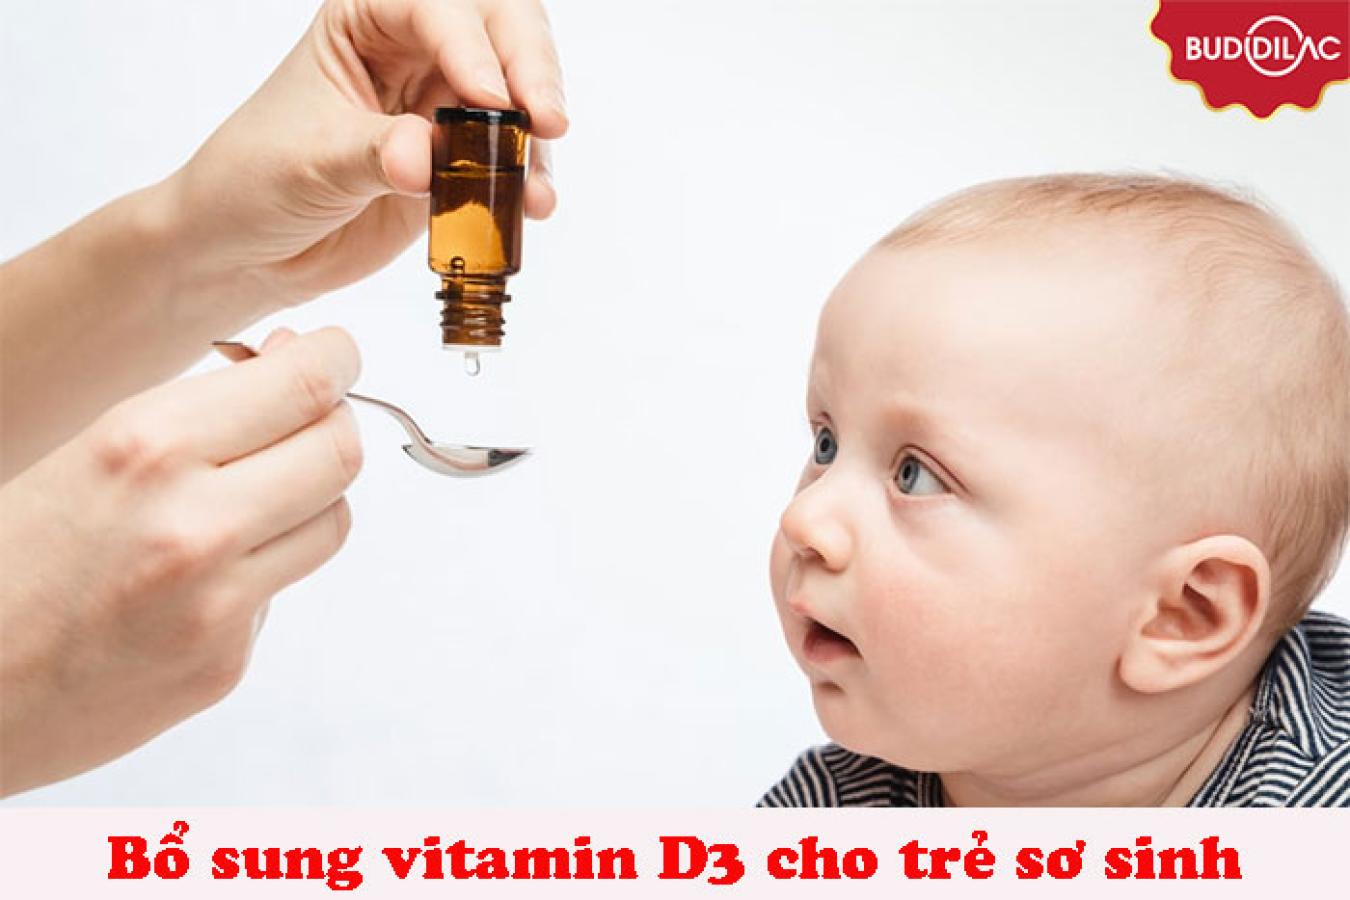 Bổ sung vitamin D3 cho trẻ sơ sinh như thế nào mới an toàn?